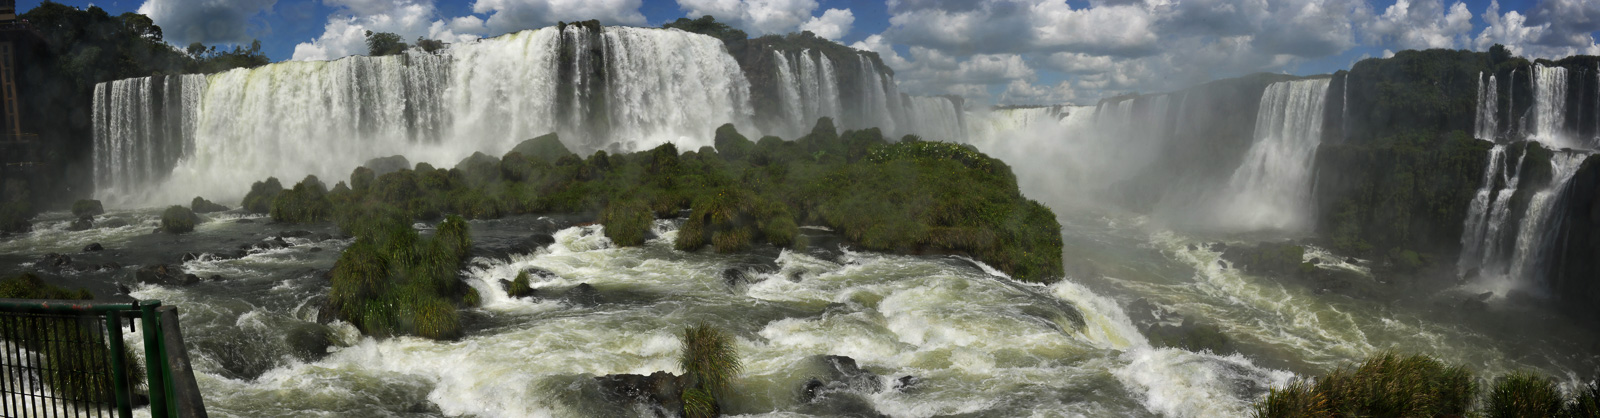 Cataratas del Iguazu [28 mm, 1/125 sec at f / 18, ISO 250]